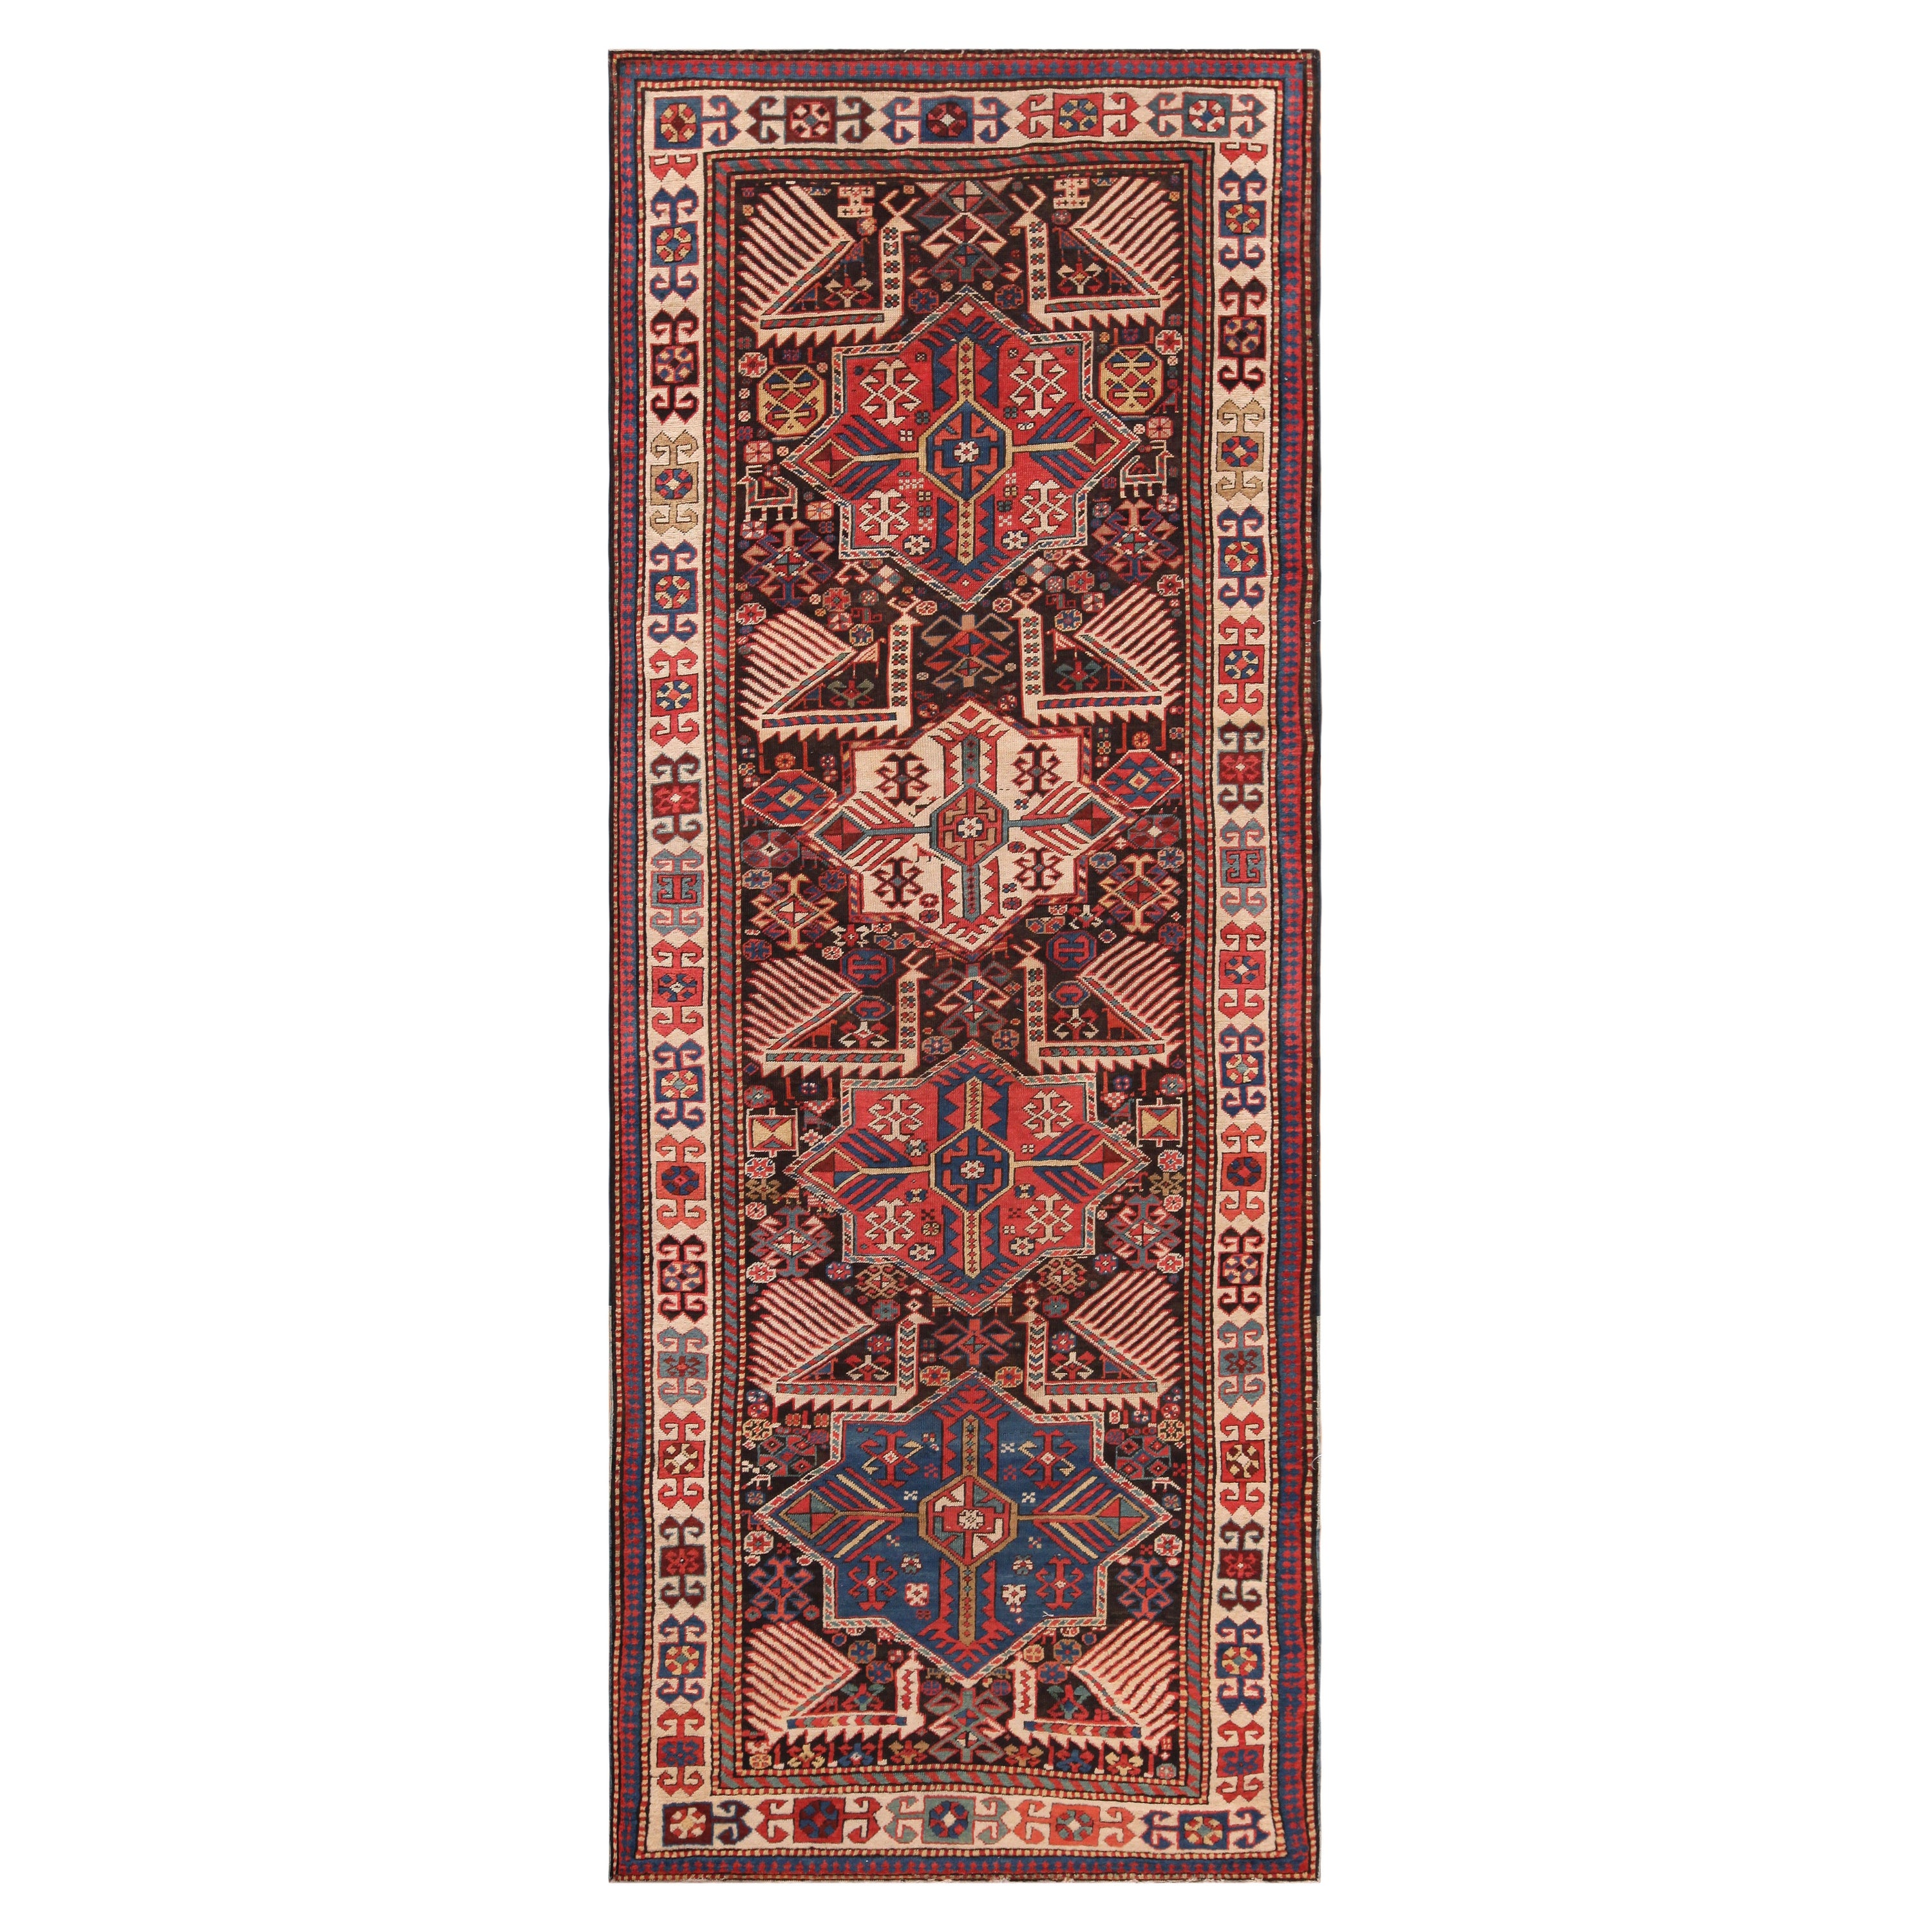 Antiker kaukasischer Teppich. 4 Fuß x 9 Fuß 9 Zoll